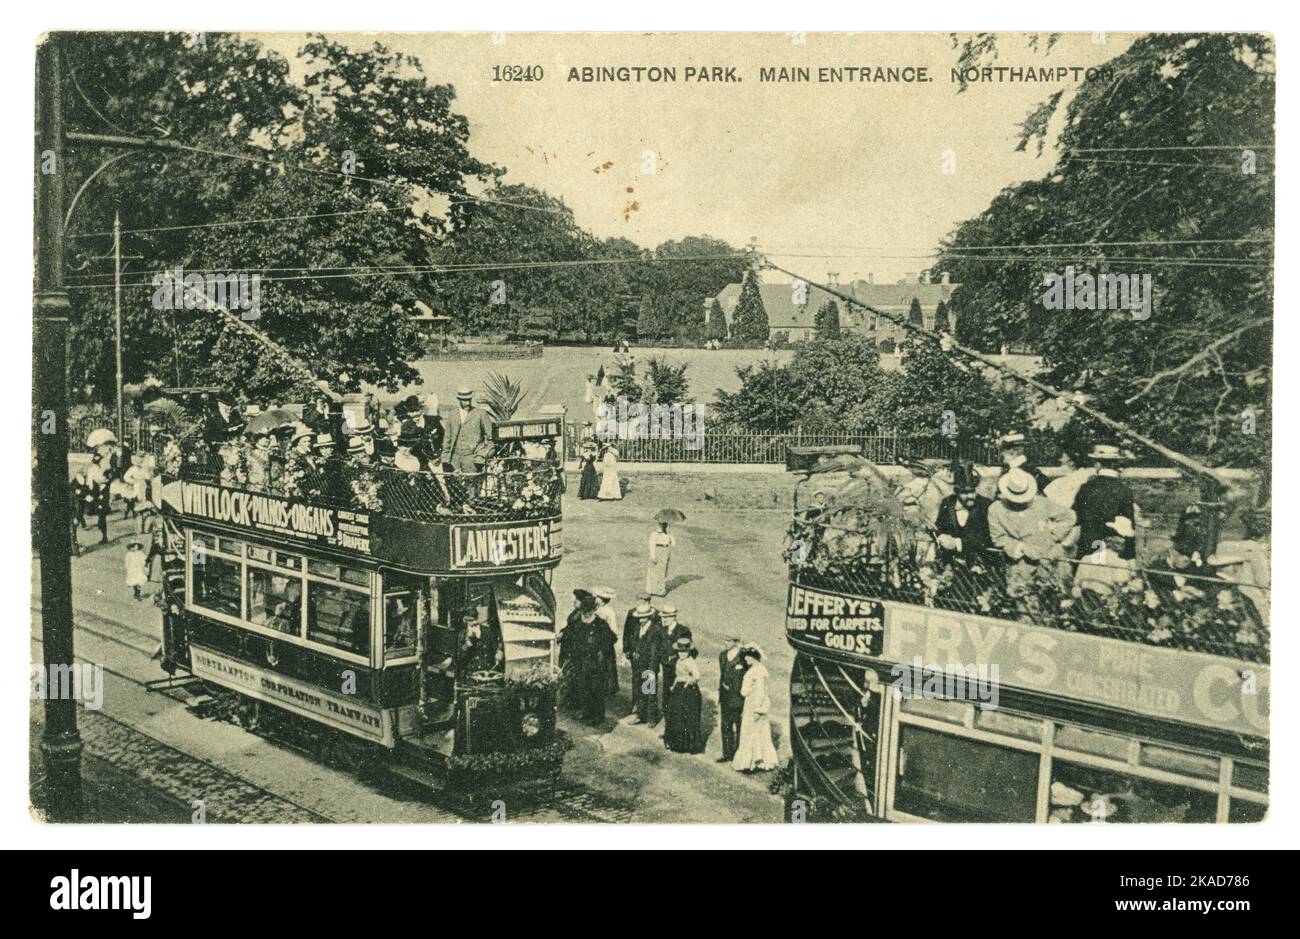 Carte postale de l'époque édouardienne d'Abington Park, entrée principale, présentant des tramways électriques avec de nombreux passagers, des panneaux publicitaires sur le côté des tramways. Northampton, East Midlands, Angleterre, Royaume-Uni daté du 1905 Banque D'Images